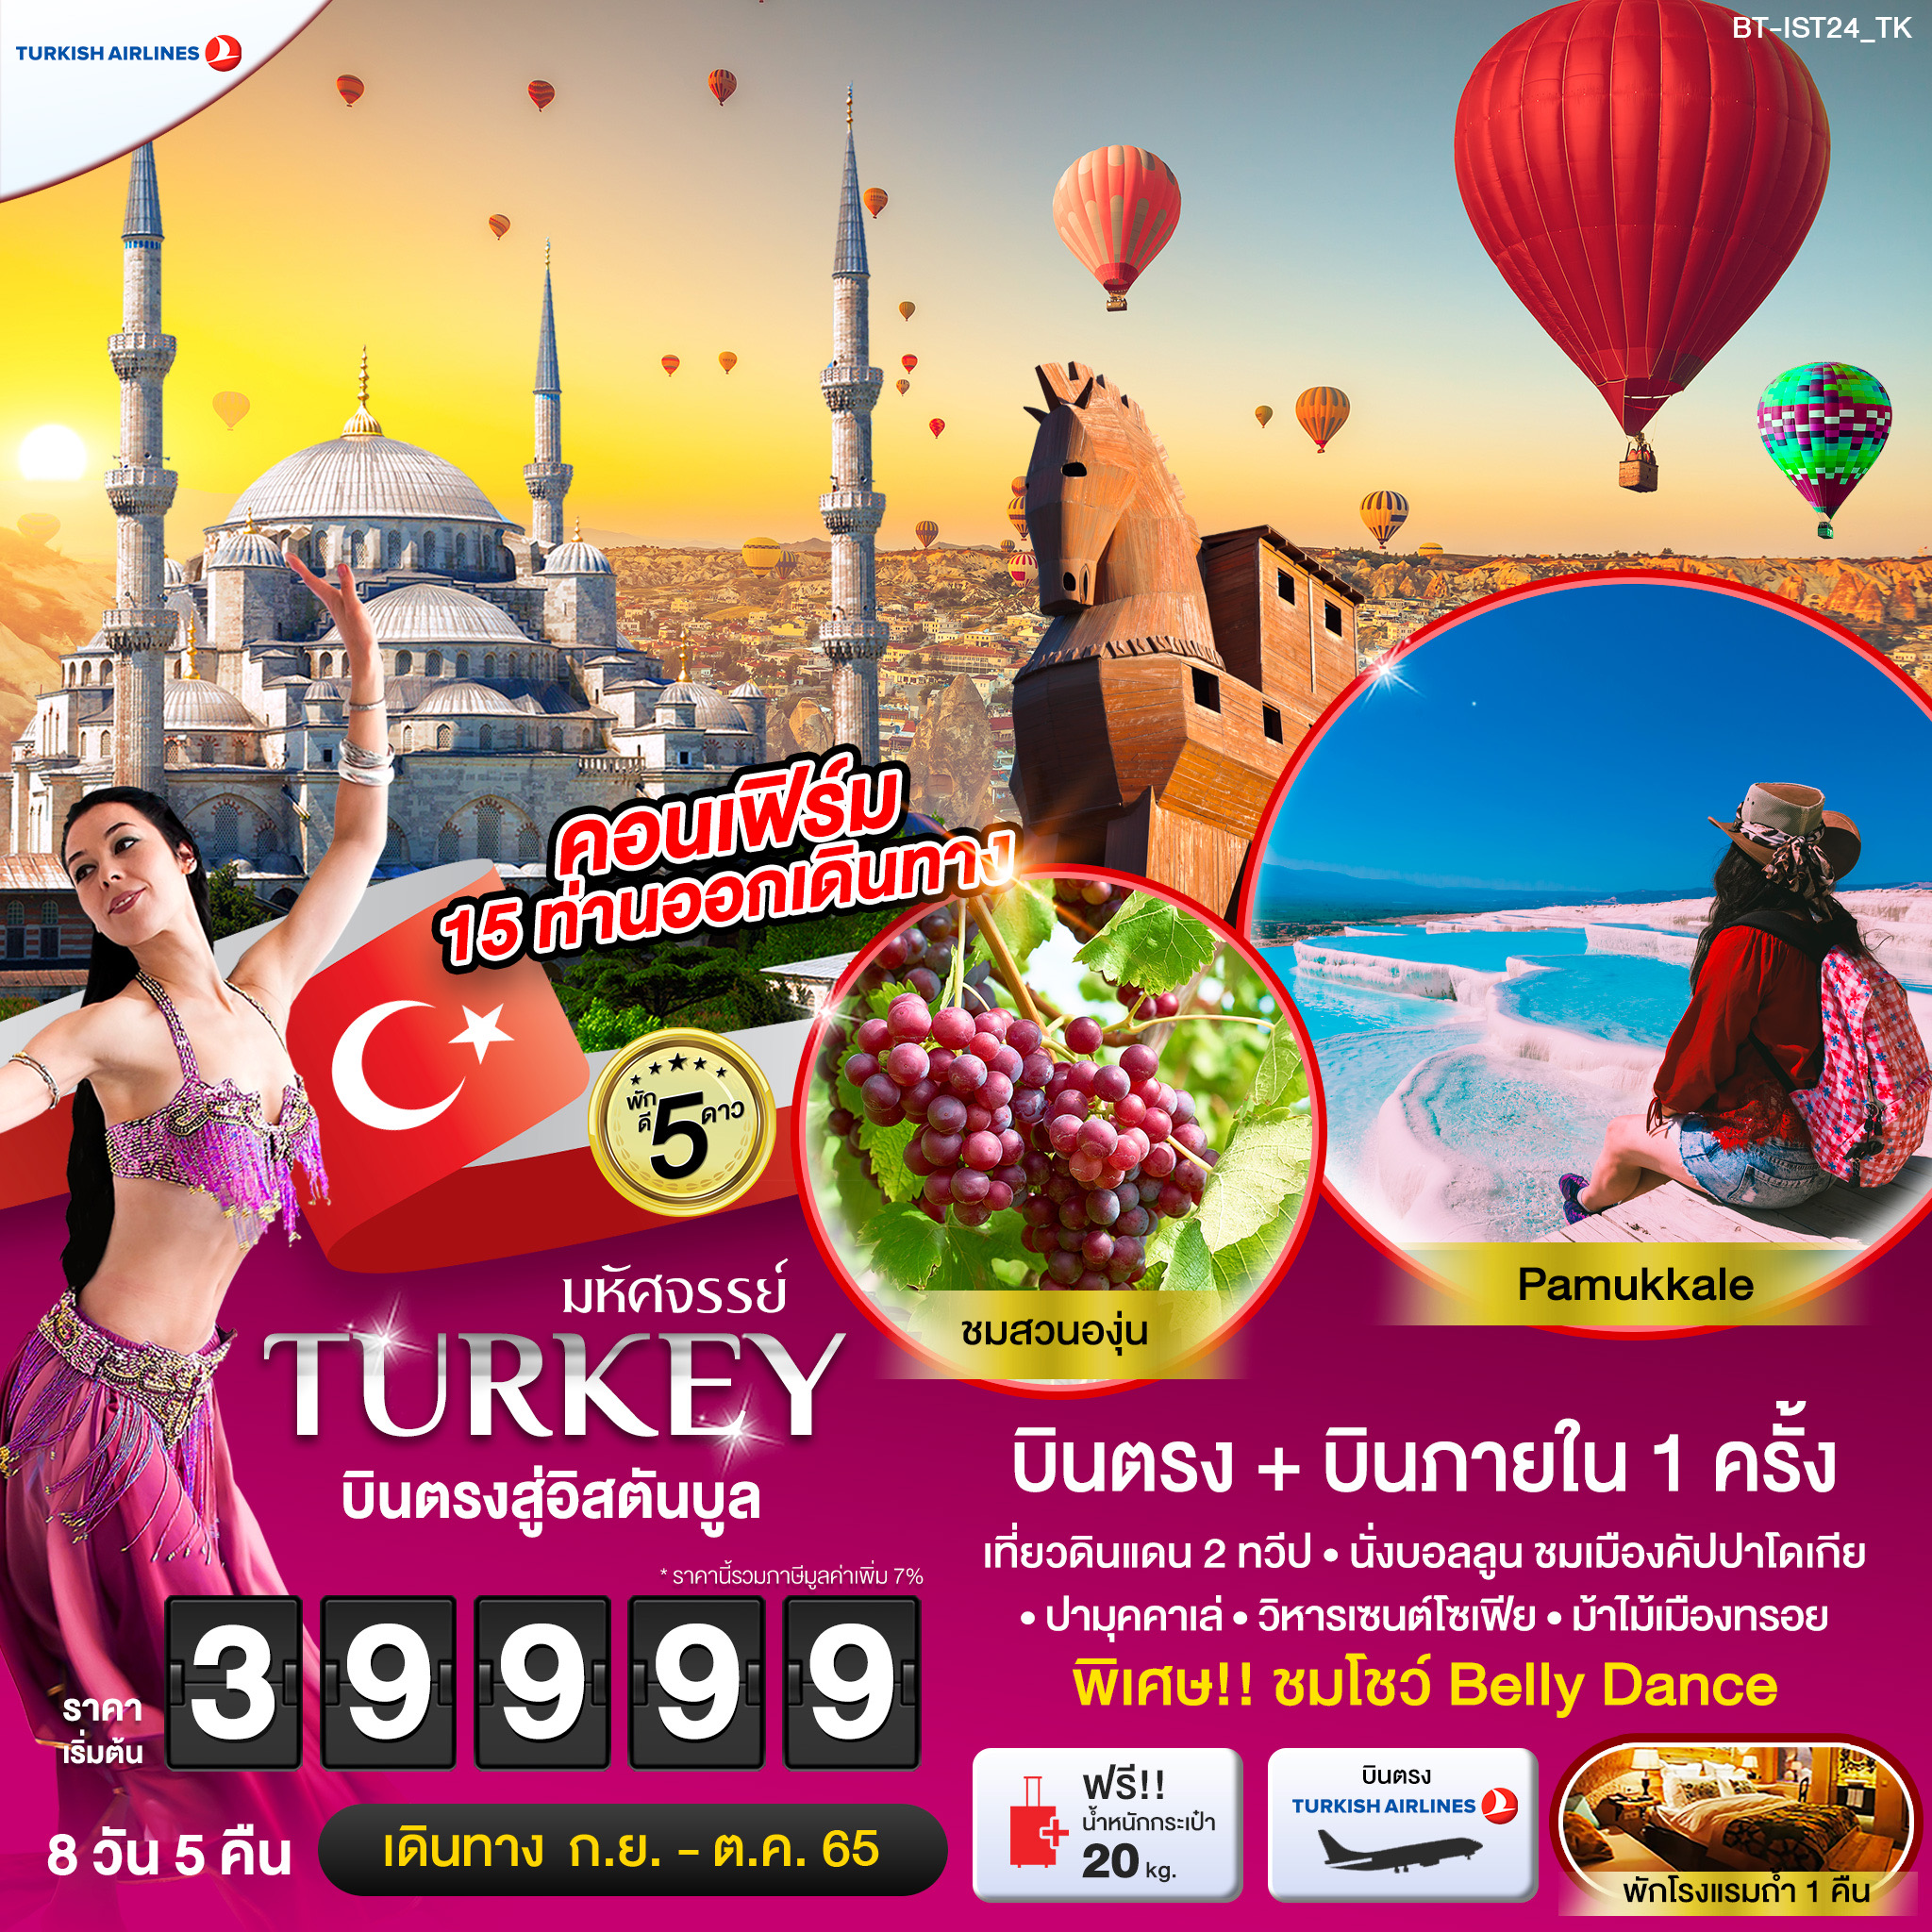 ทัวร์ตุรกี  : มหัศจรรย์ TURKEY บินตรงสู่อิสตันบูล